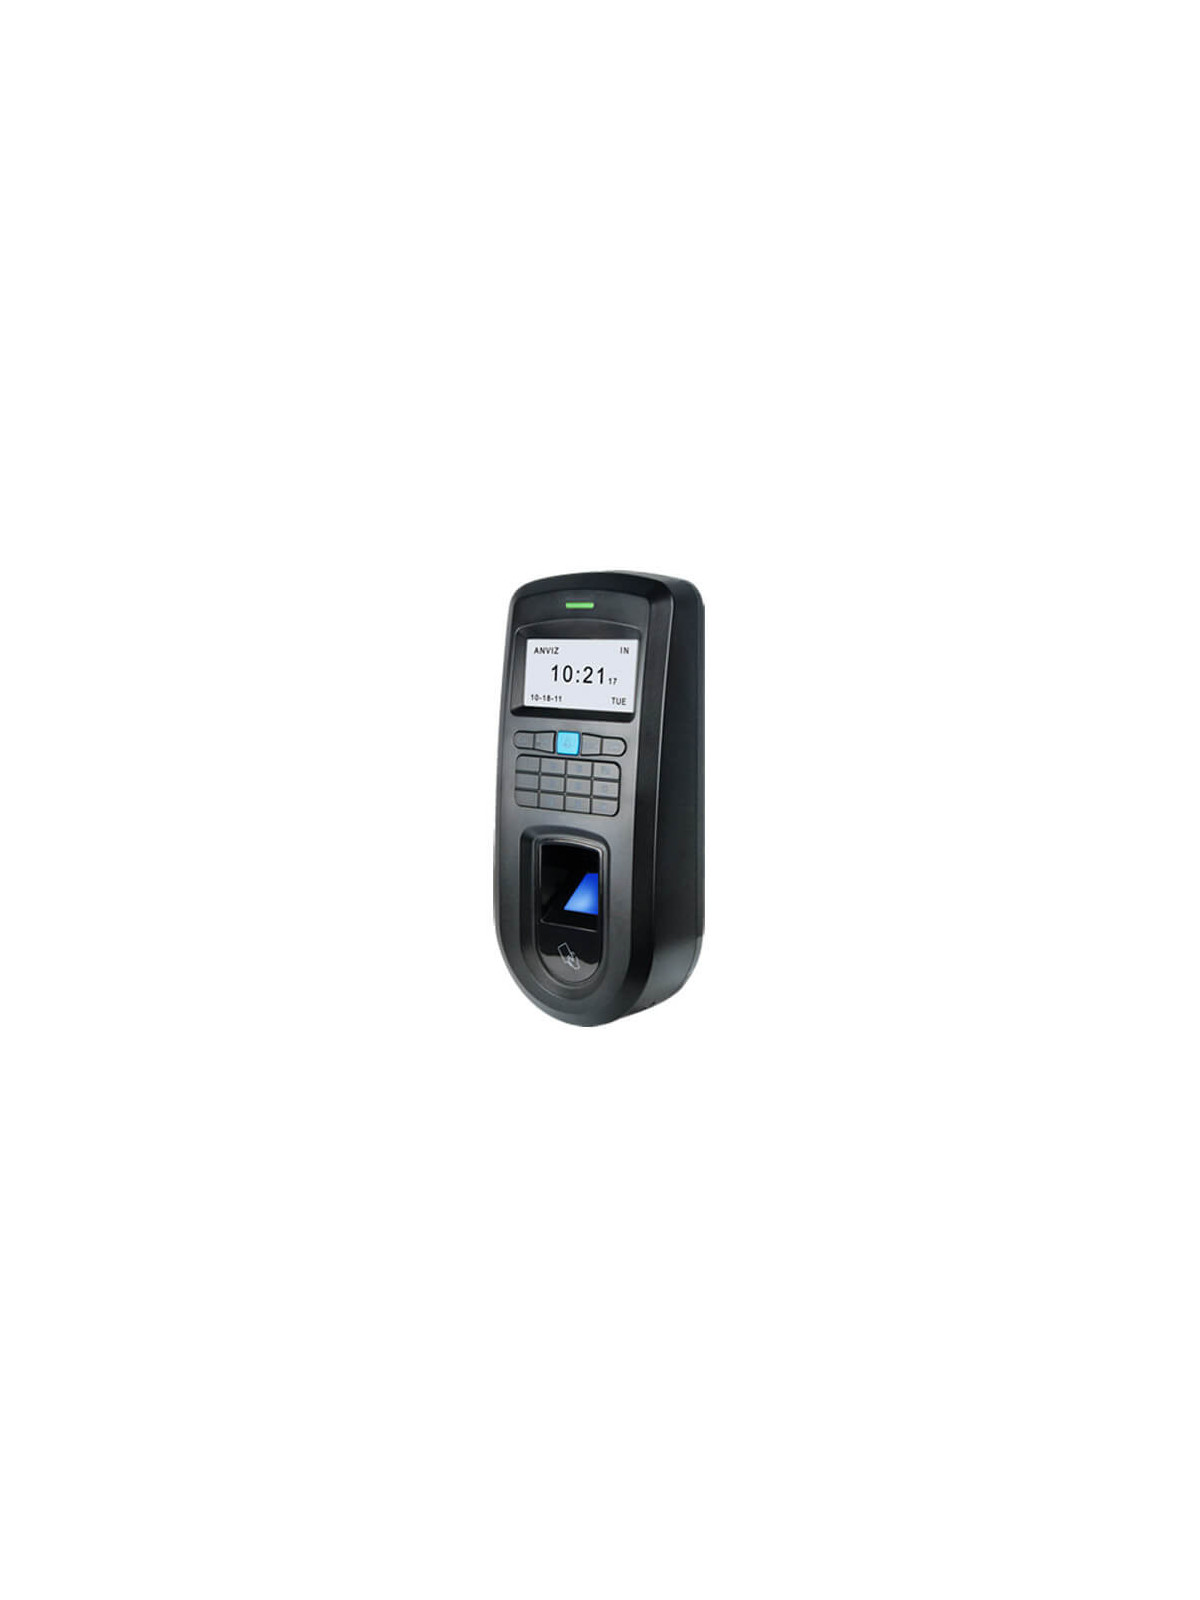 Lector biométrico autónomo Anviz VF30-MIFARE Huellas Mifare Teclado RS485 POE miniUSB Wiegand